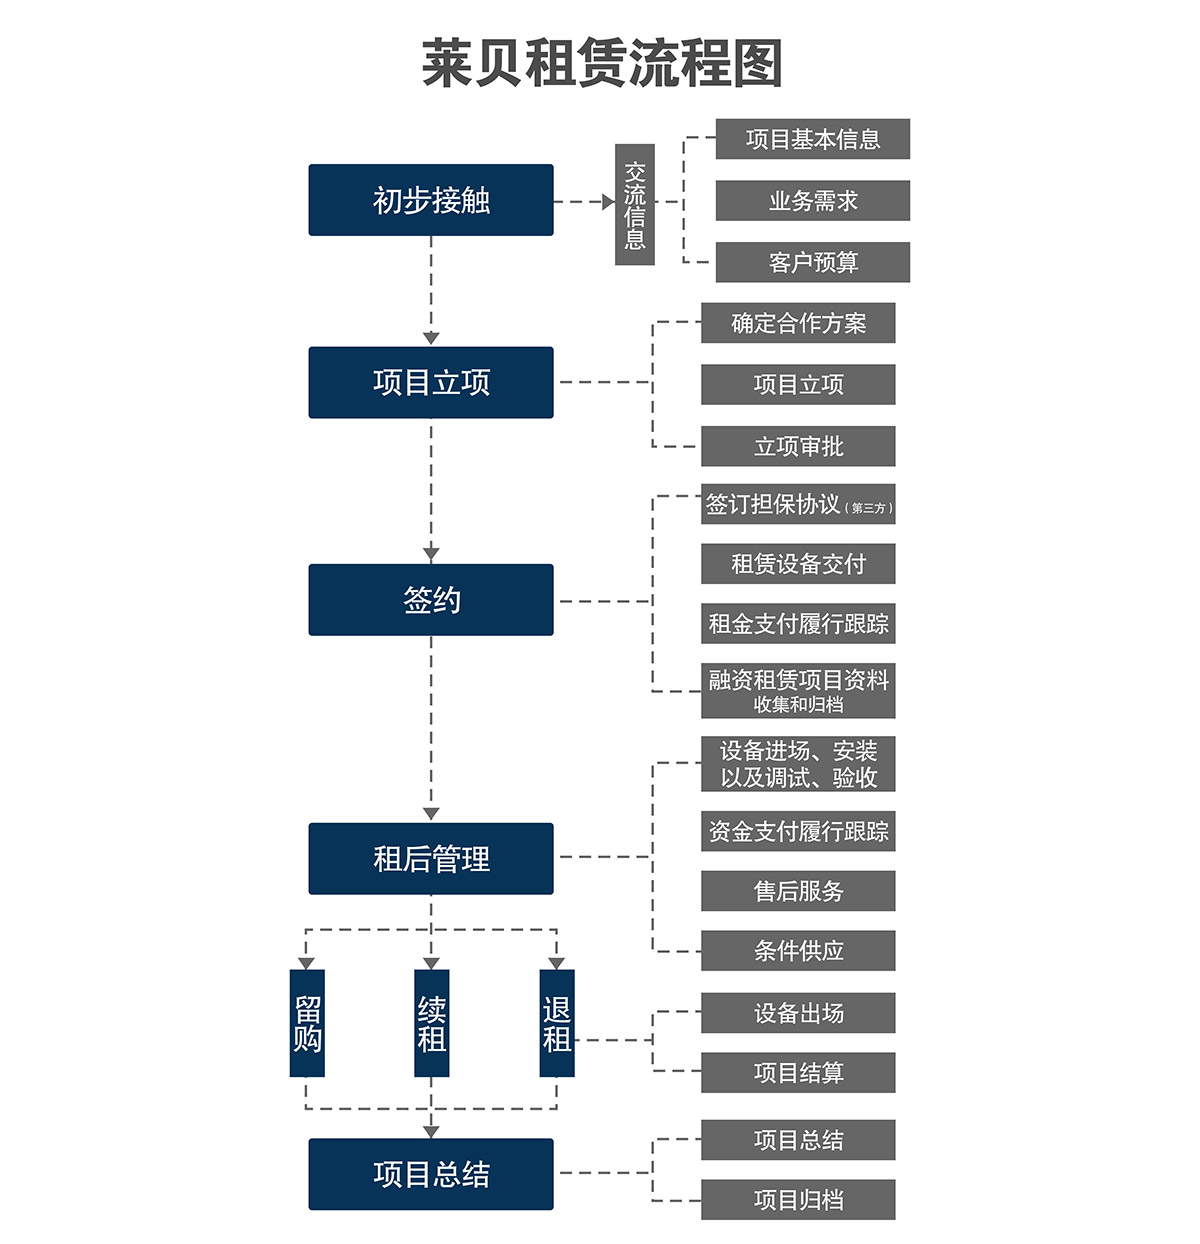 重庆莱贝立体停车场投资经营流程图.jpg